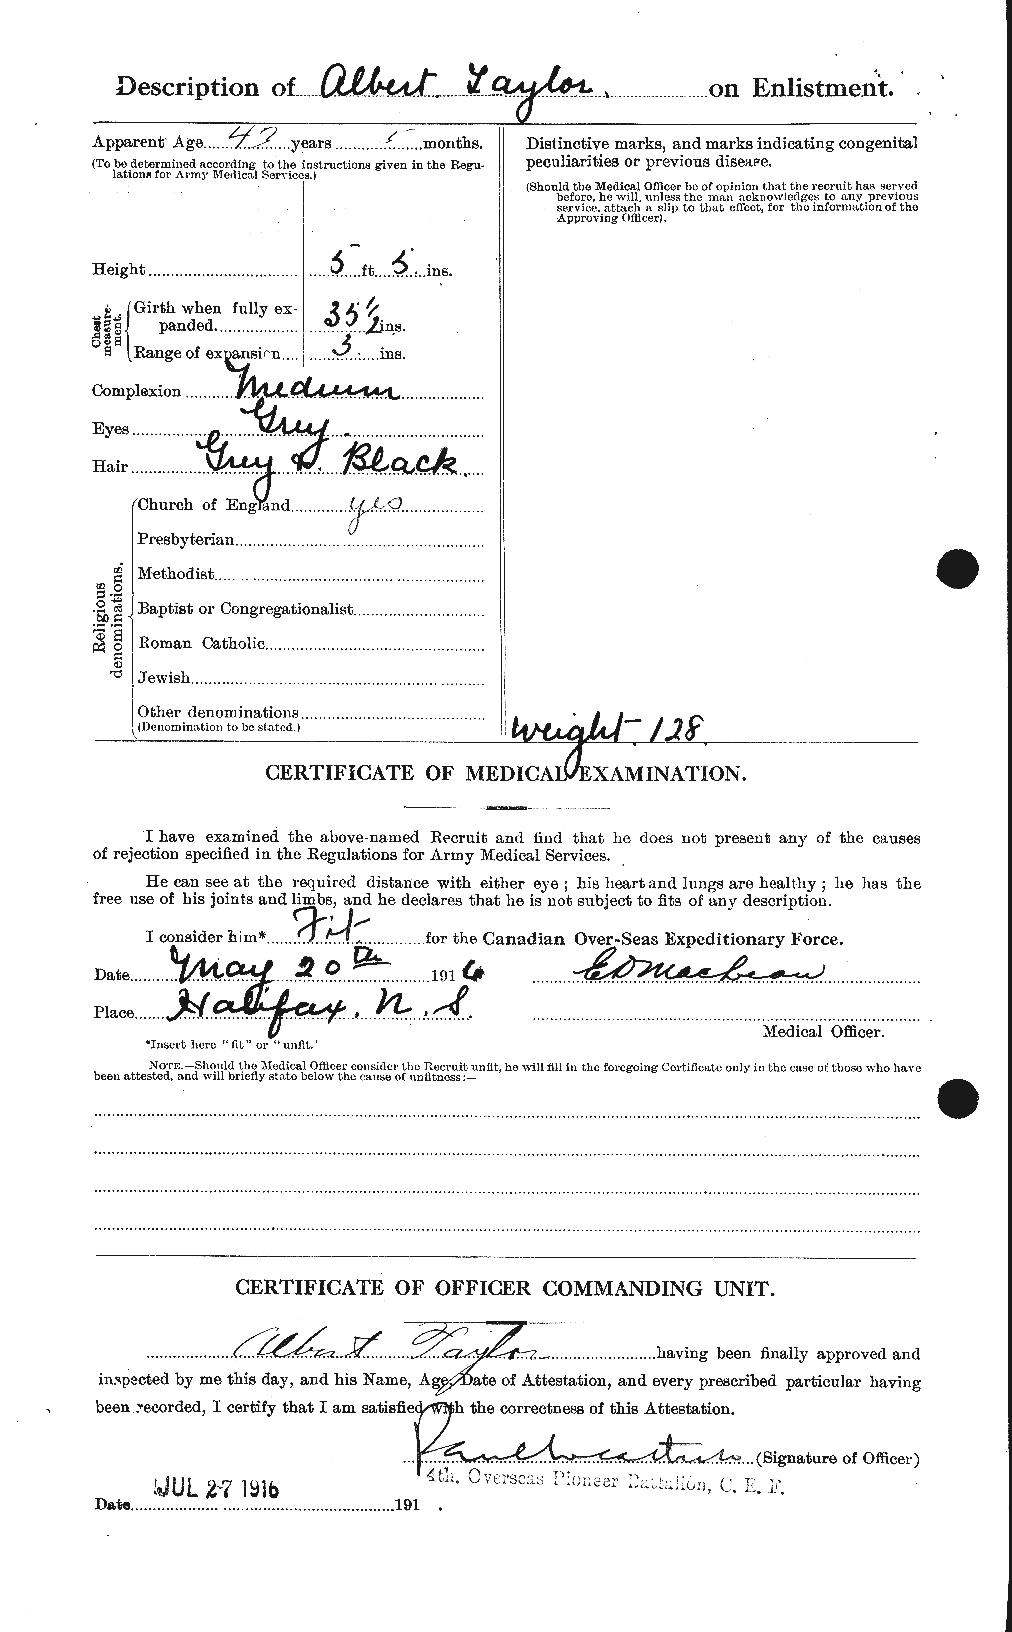 Dossiers du Personnel de la Première Guerre mondiale - CEC 626085b